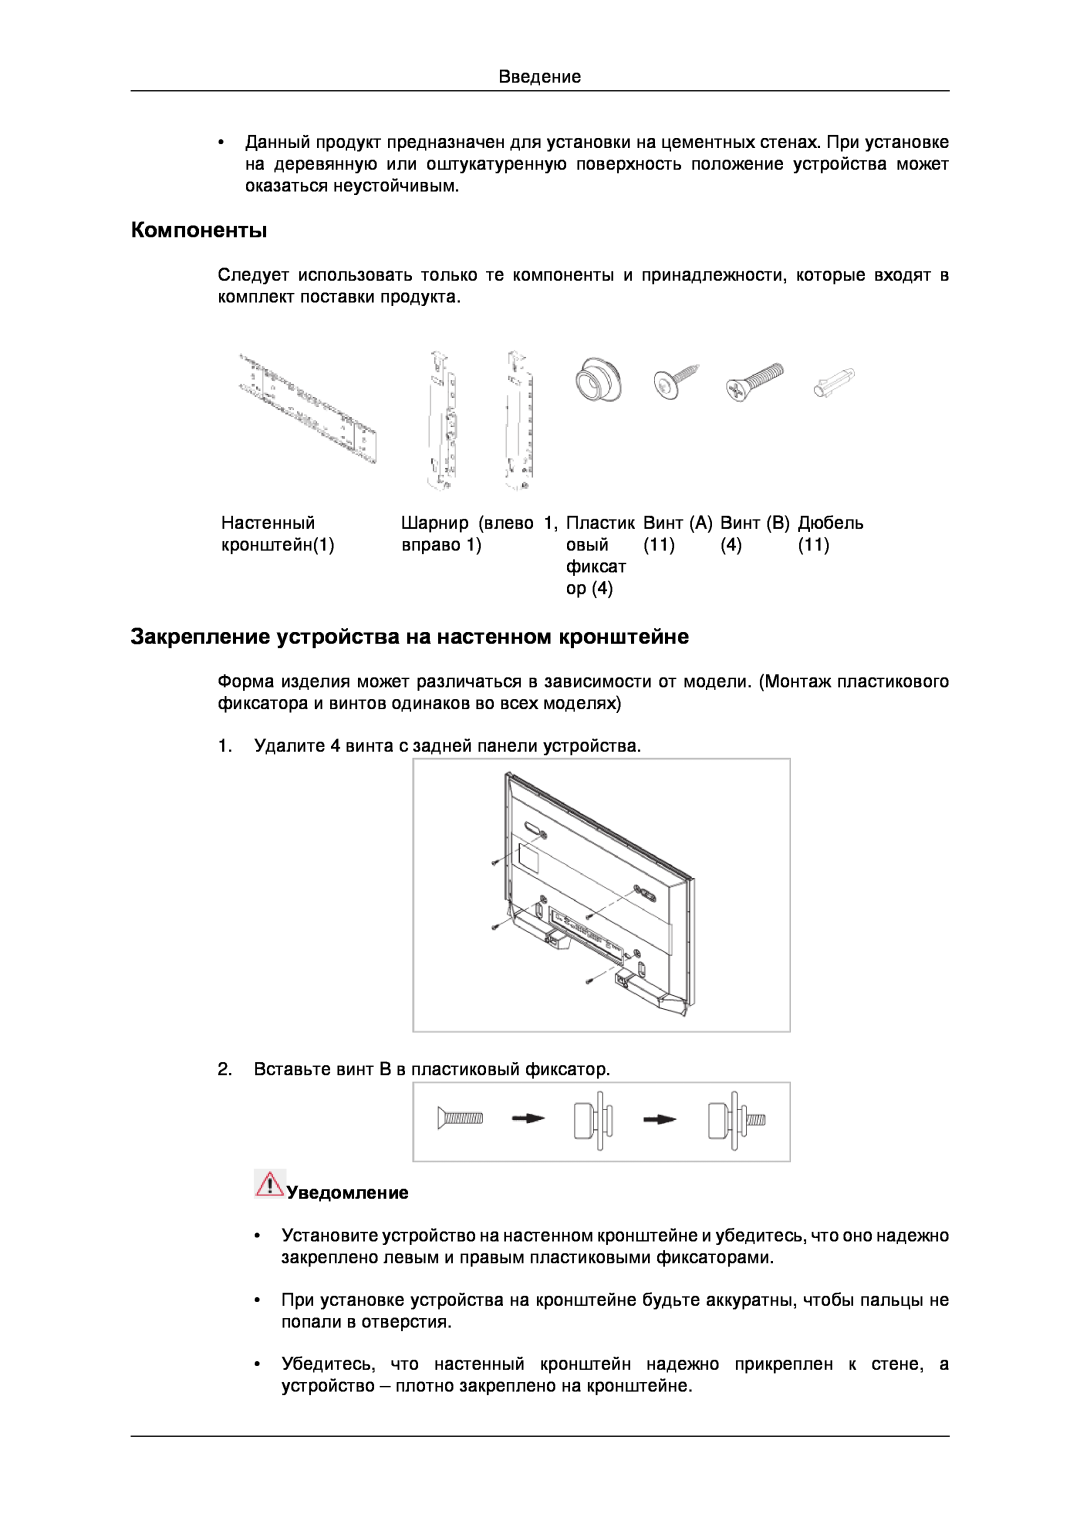 Samsung LH32CRSMBD/EN, LH32CRTMBC/EN manual Компоненты, Закрепление устройства на настенном кронштейне, Уведомление 